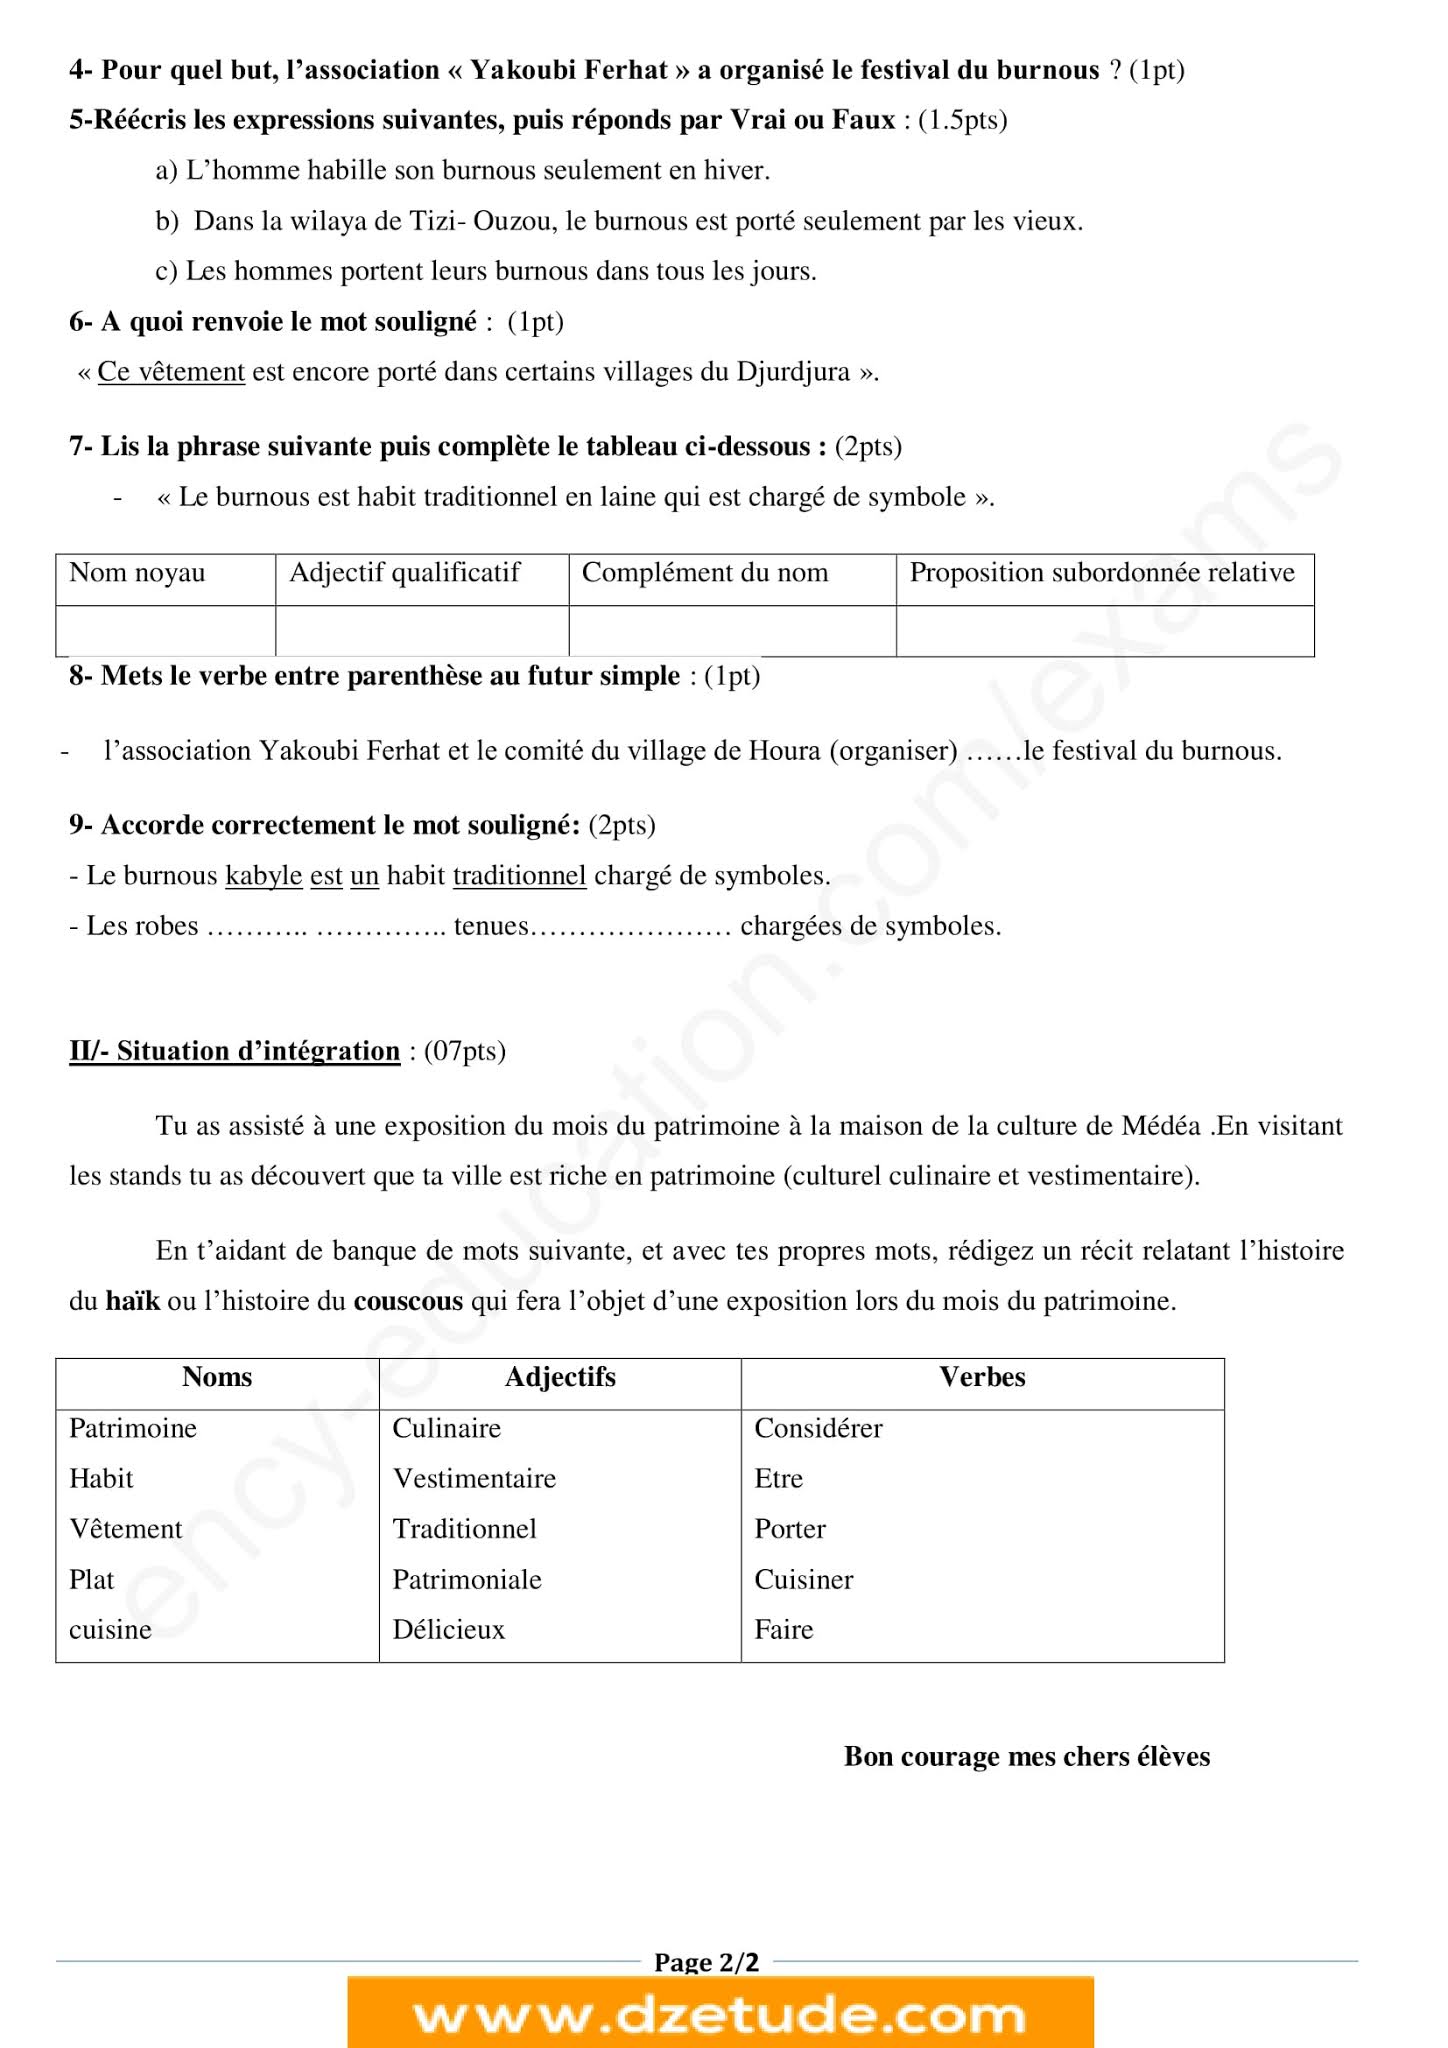 إختبار اللغة الفرنسية الفصل الثاني للسنة الثالثة متوسط - الجيل الثاني نموذج 3